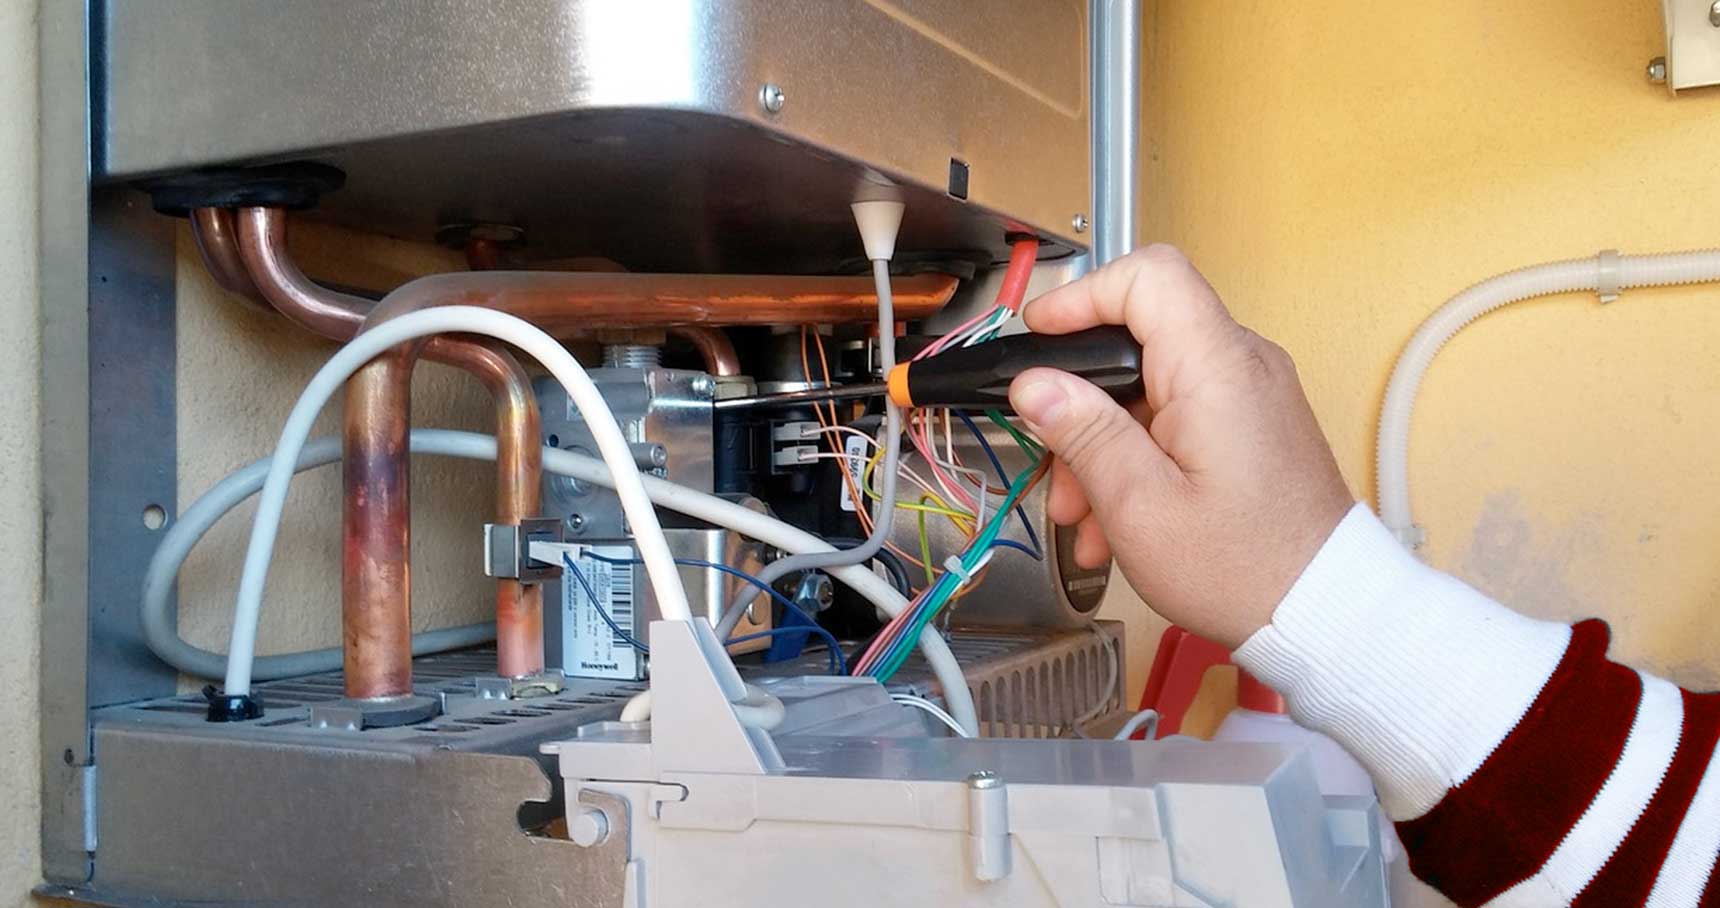 Boiler-Repair